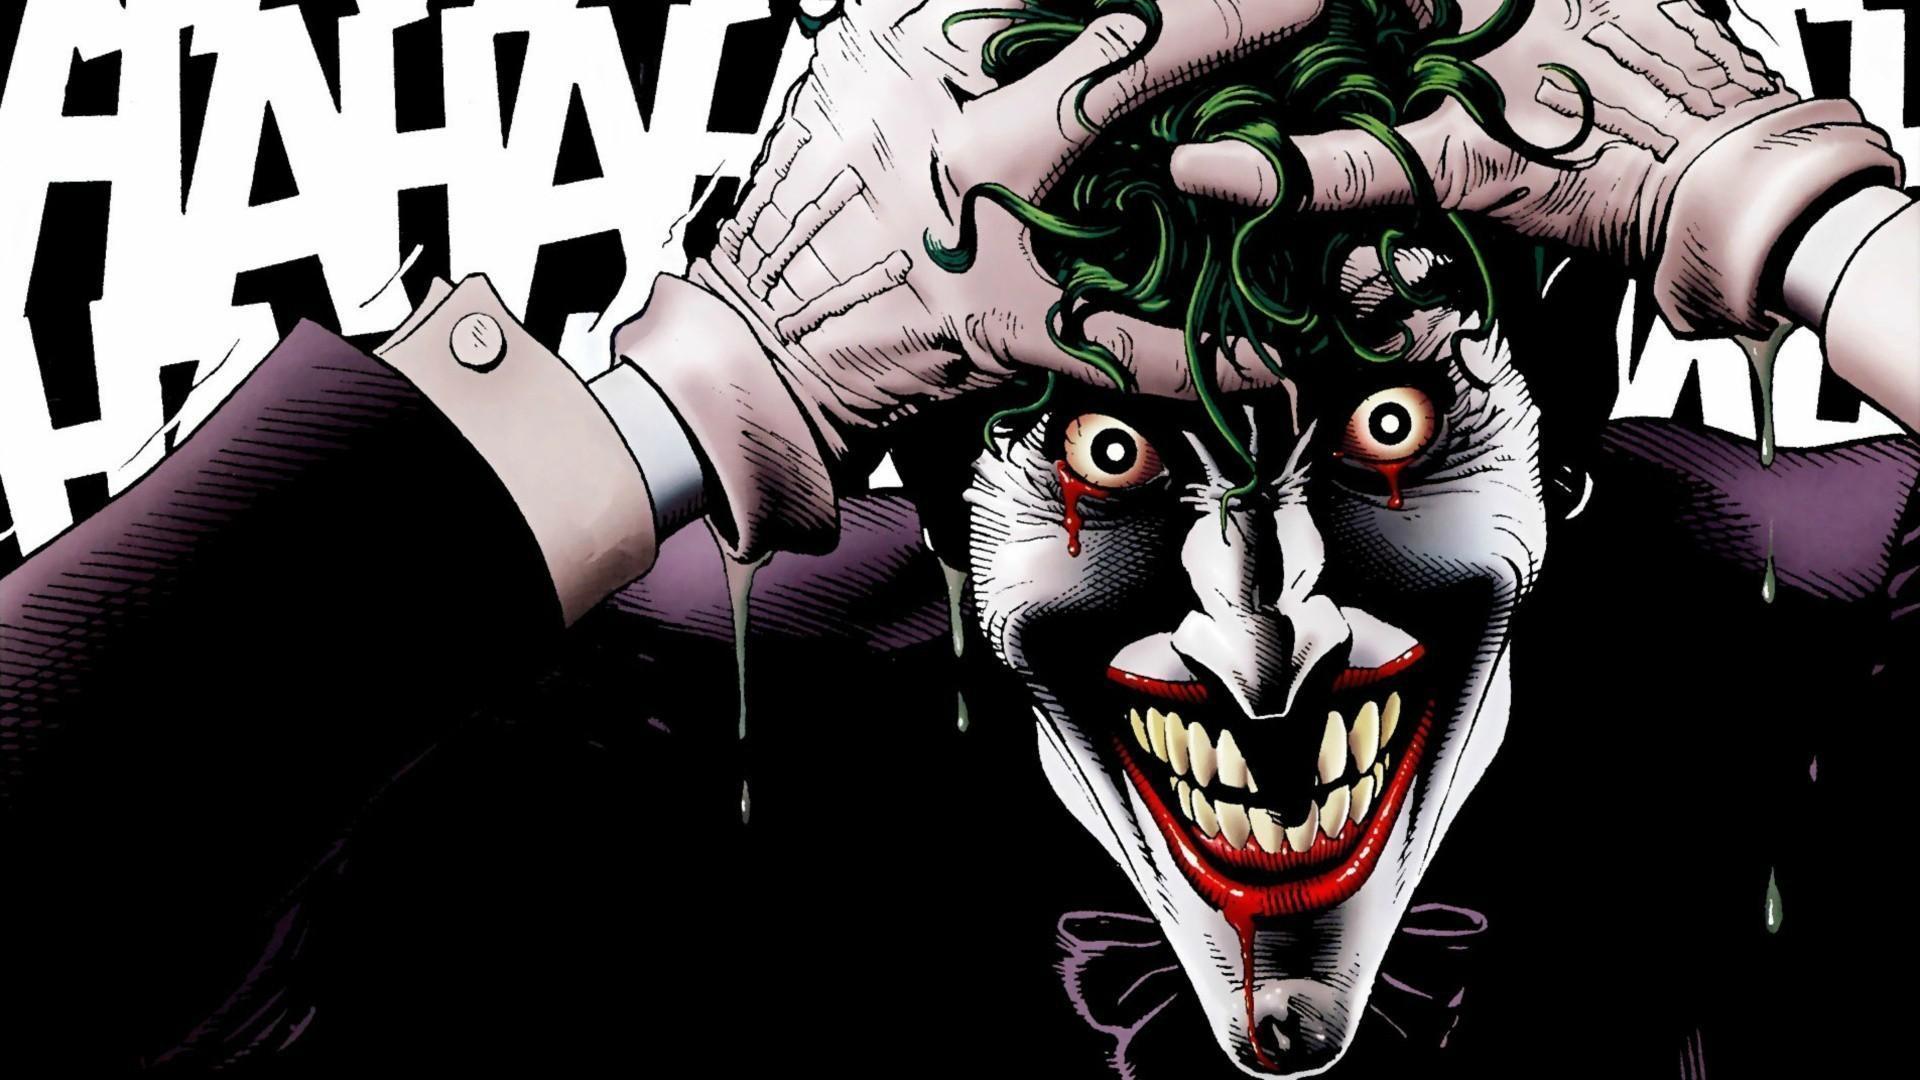 Download Gambar Joker Hd Wallpaper Smile terbaru 2020